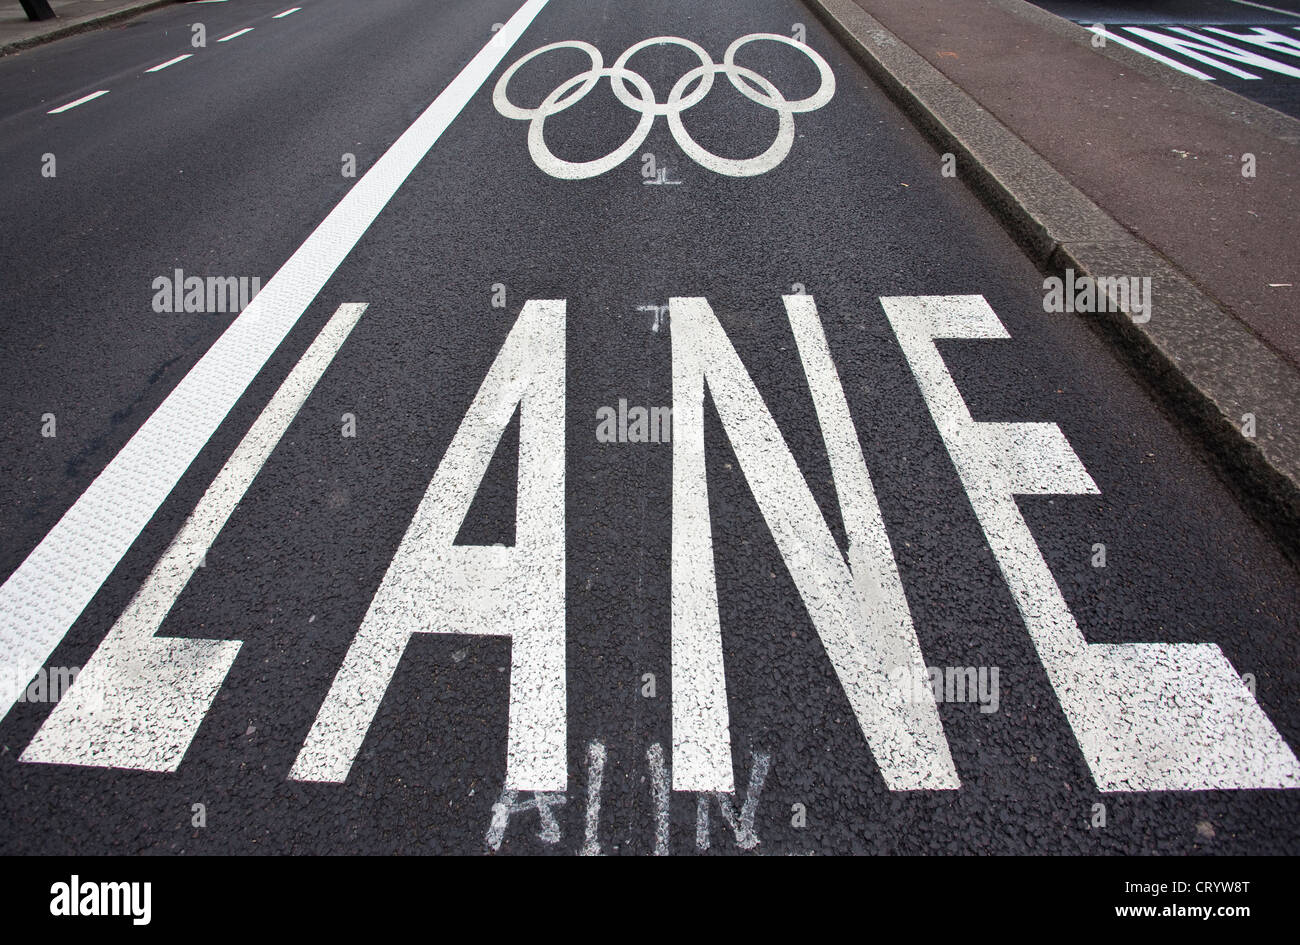 Jeux olympiques sur Victoria Embankment pour les athlètes et officiels d'éviter les embouteillages lors de Jeux olympiques de Londres en 2012. Banque D'Images